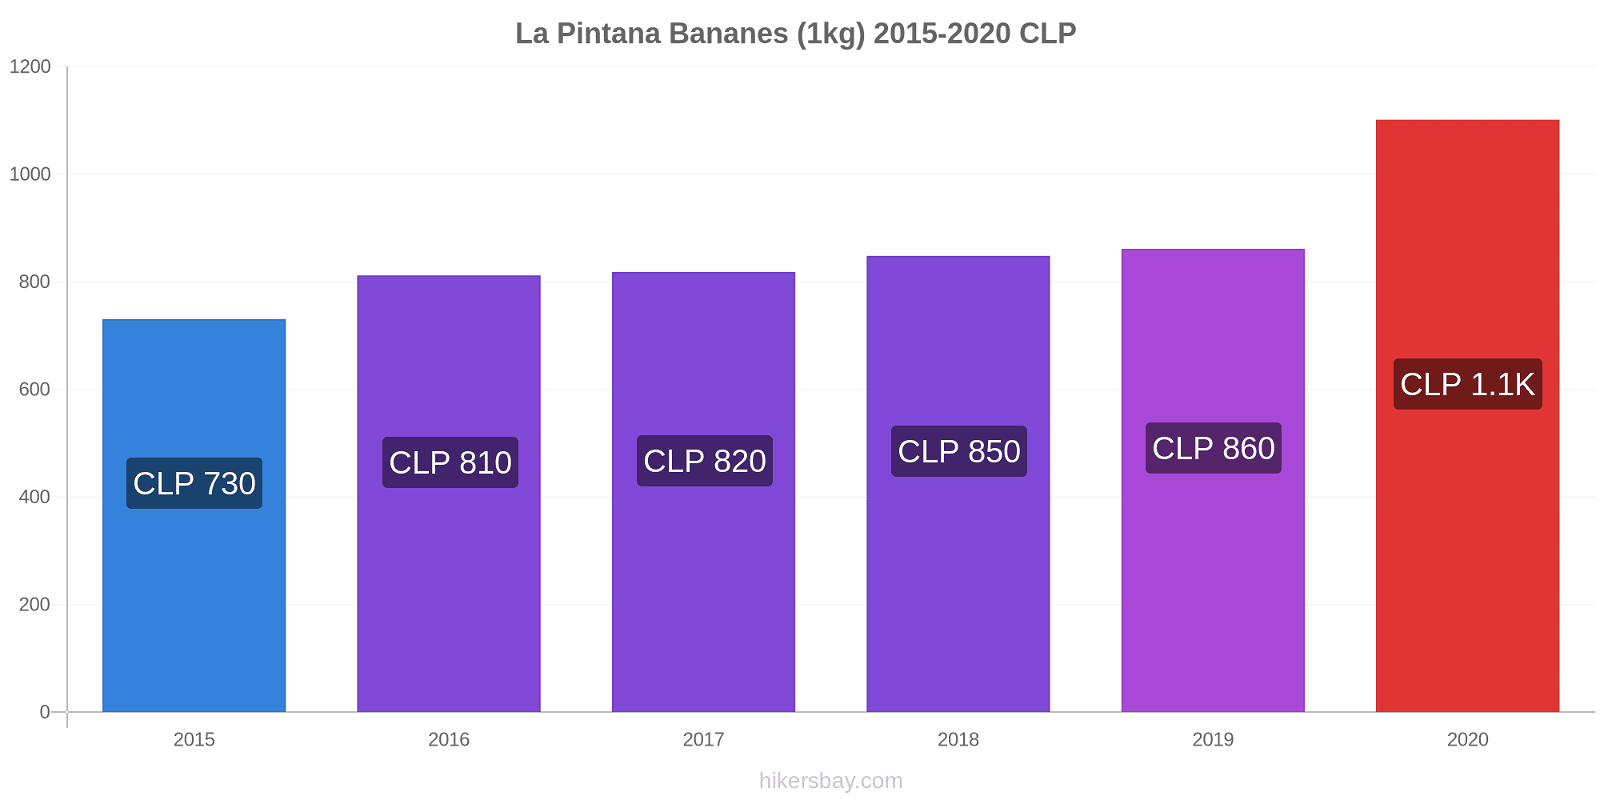 La Pintana changements de prix Bananes (1kg) hikersbay.com